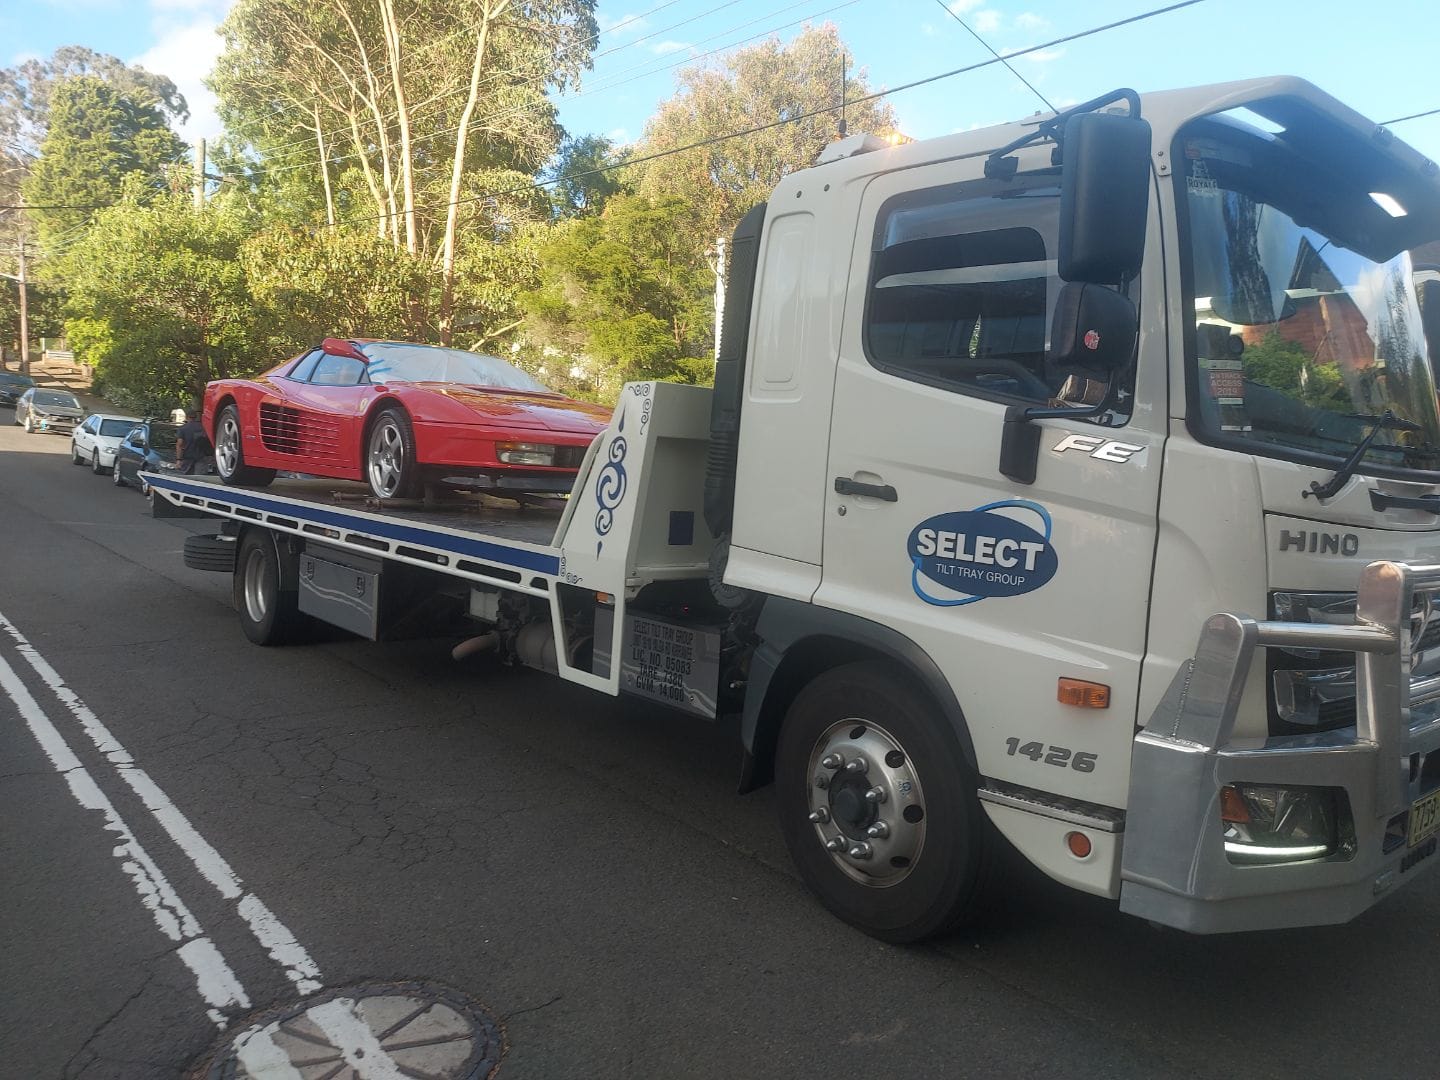 A Ferrari Testarossa being towed on a flat bed tow truck